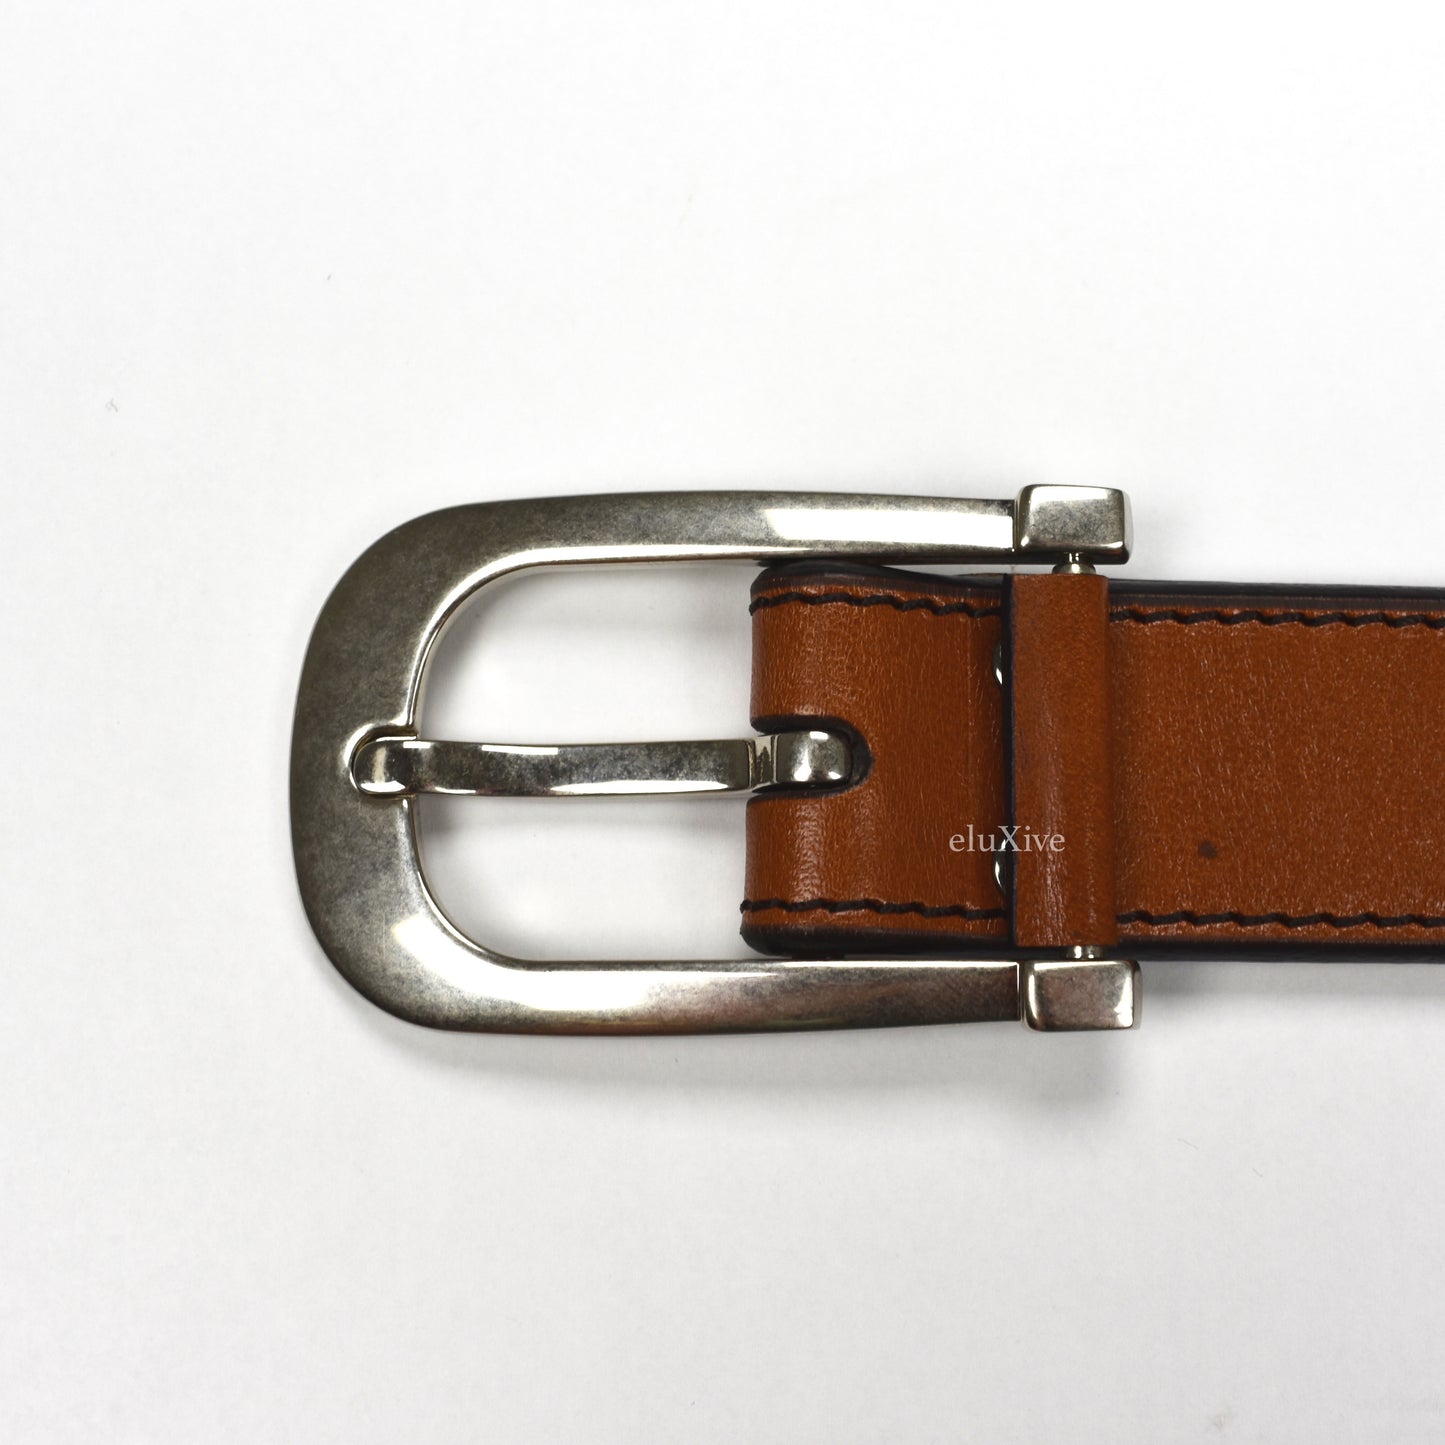 Tom Ford - Brown Vintage Leather Belt